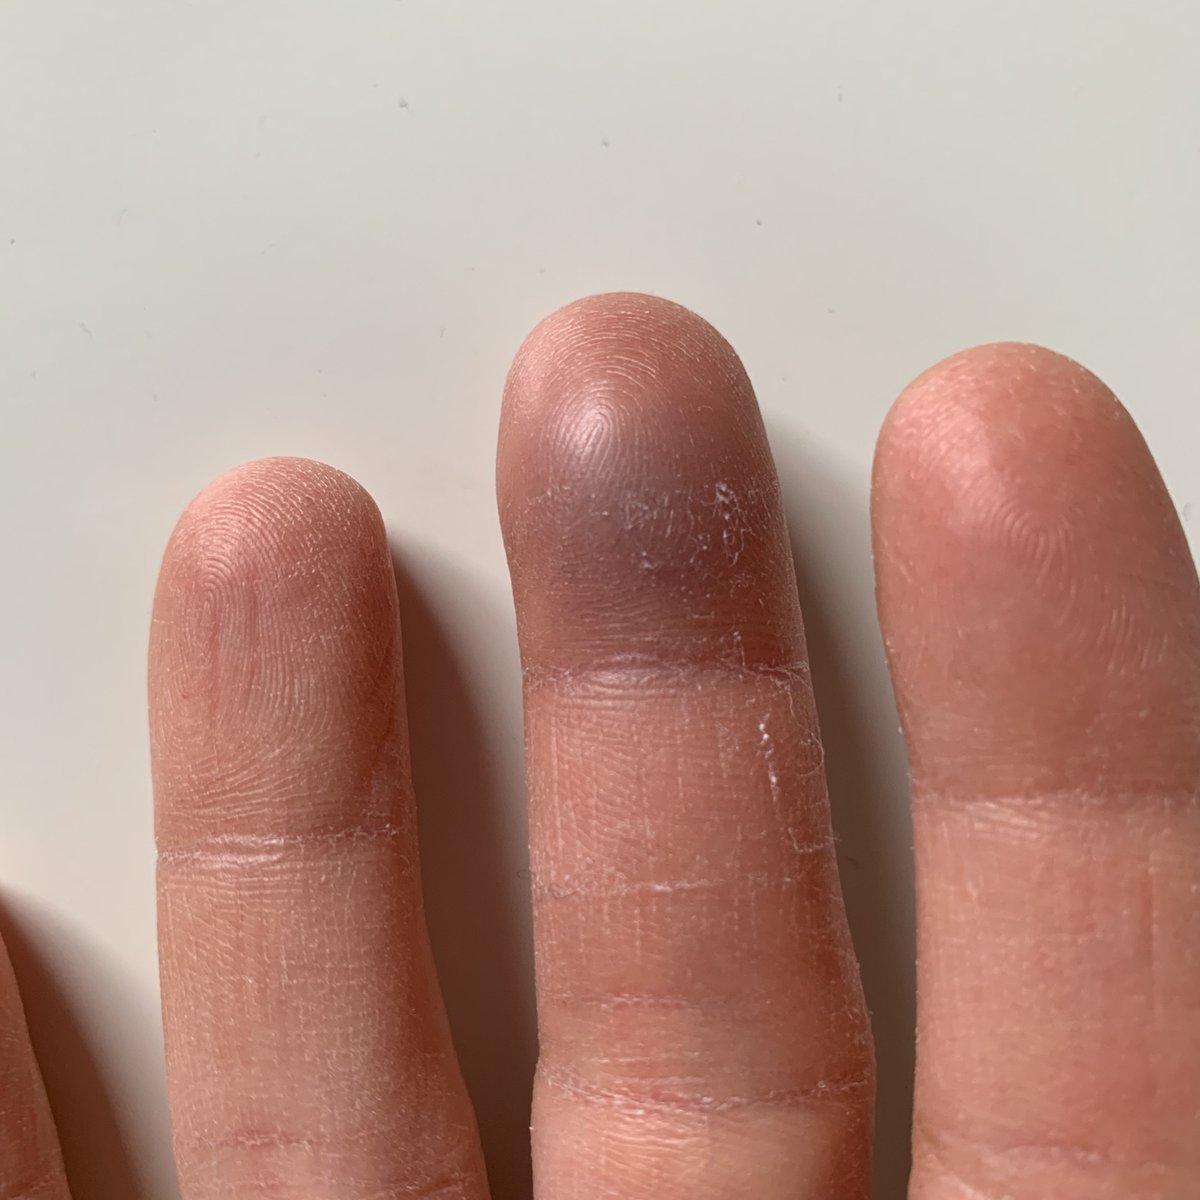 Finger geklemmt nagel blau